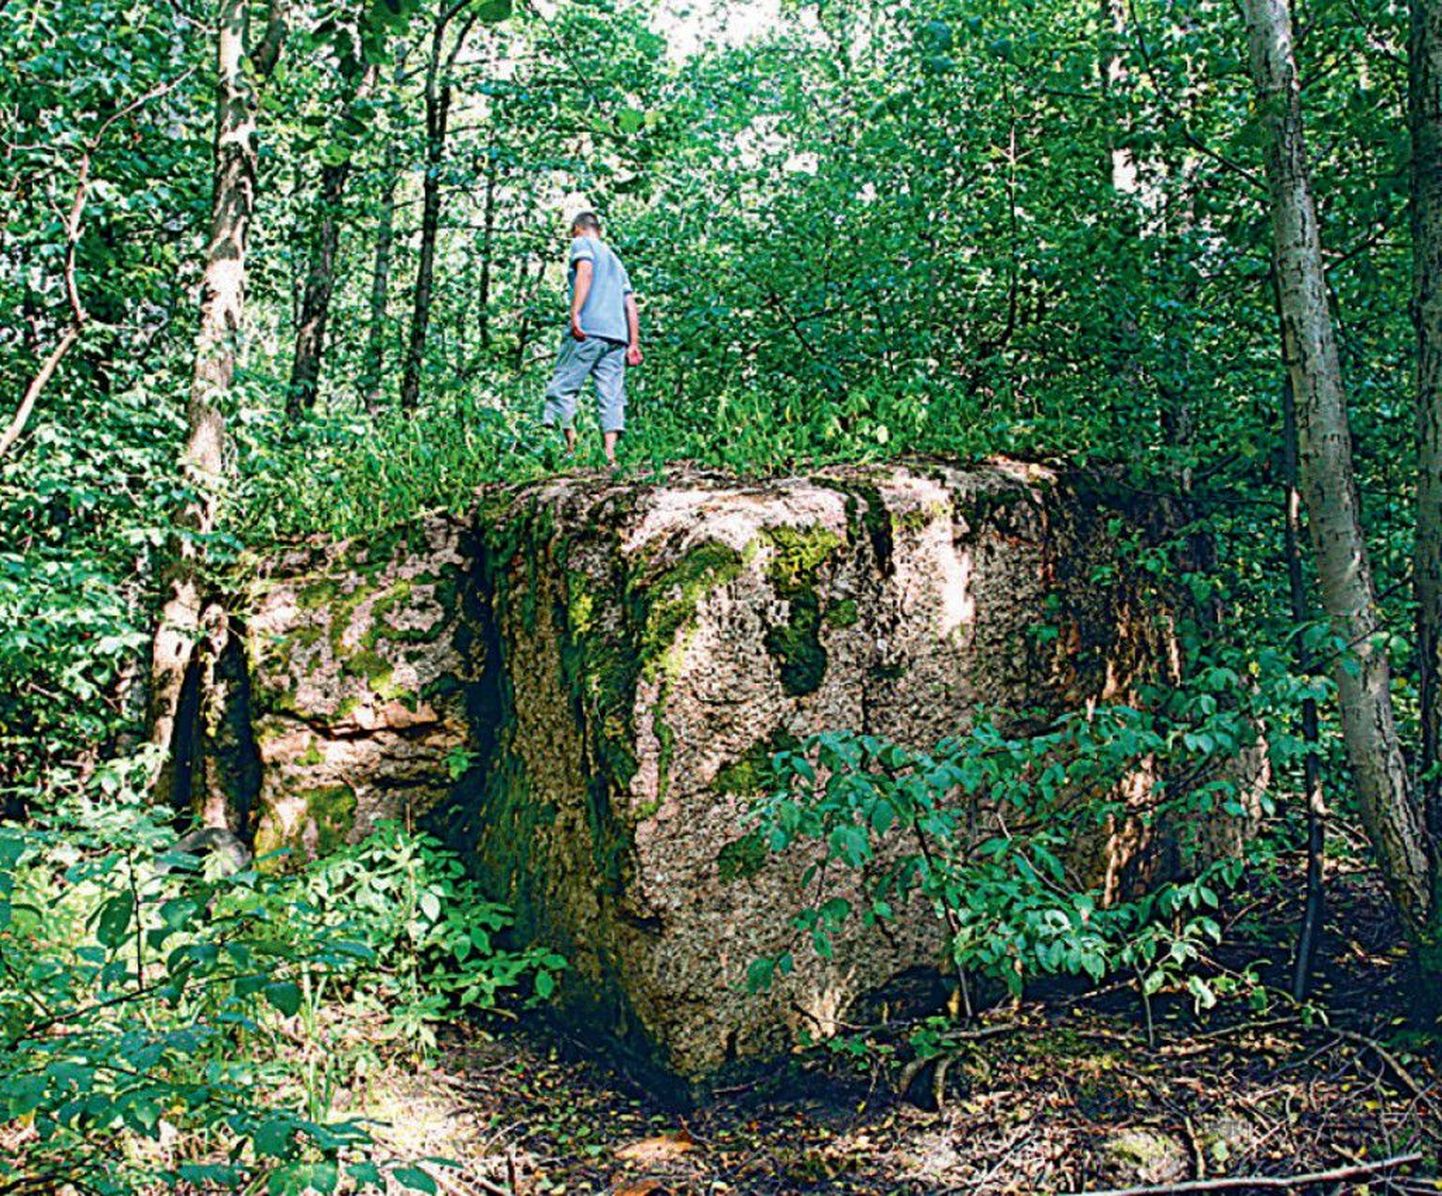 Tallinna külje all Haabneemes lepavõsasse kasvanud hiidrahnu
annab esialgu üles leida, ja kui see leitud, siis annab kivimüraka
otsa ronida.